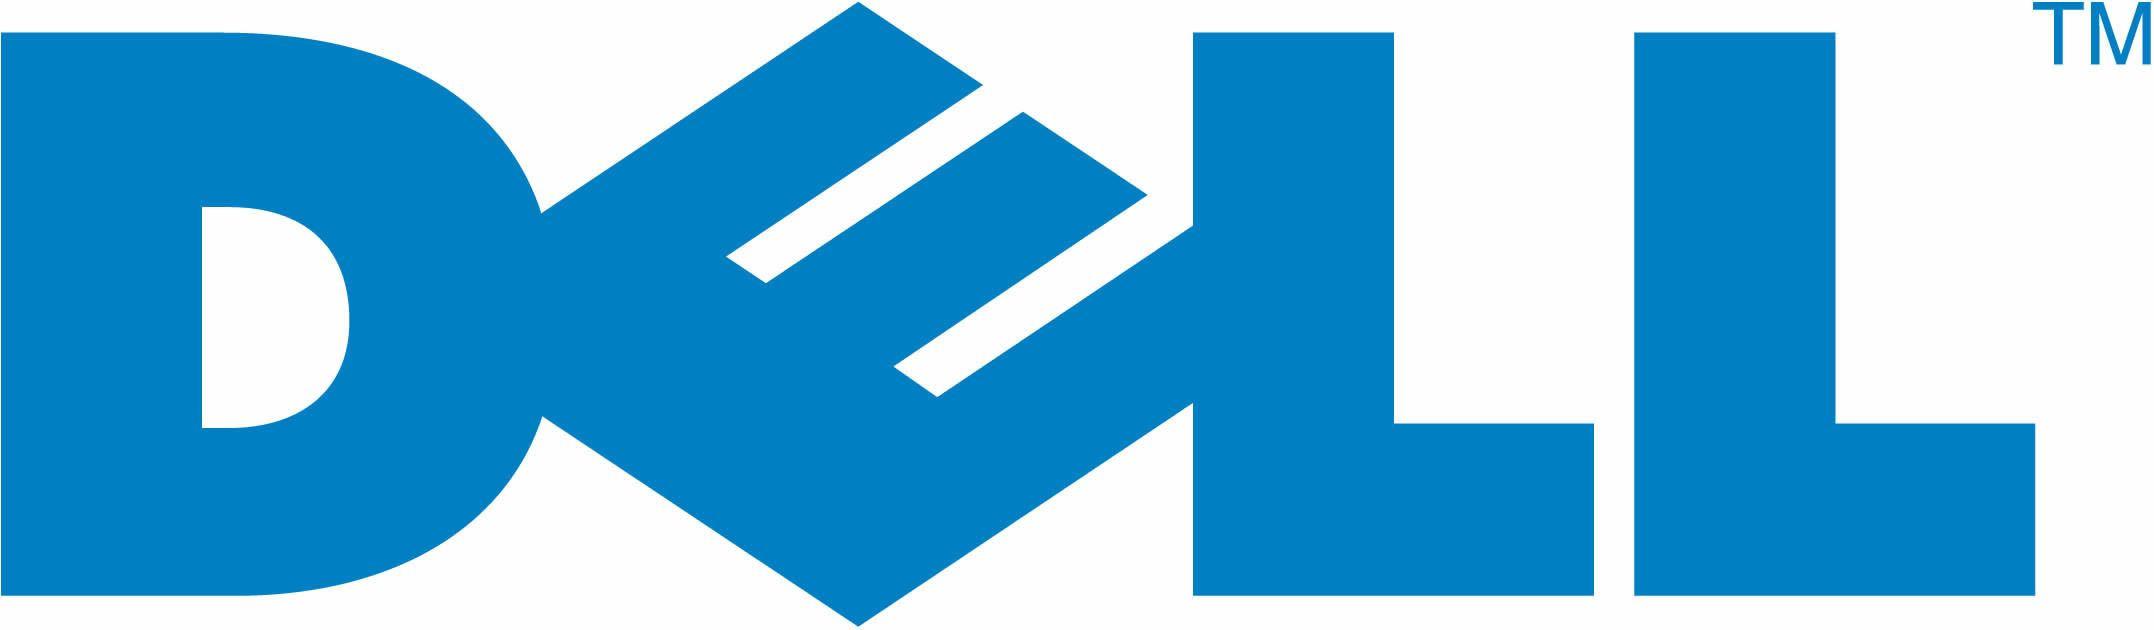 Dell Computer Logo - Dell Logos